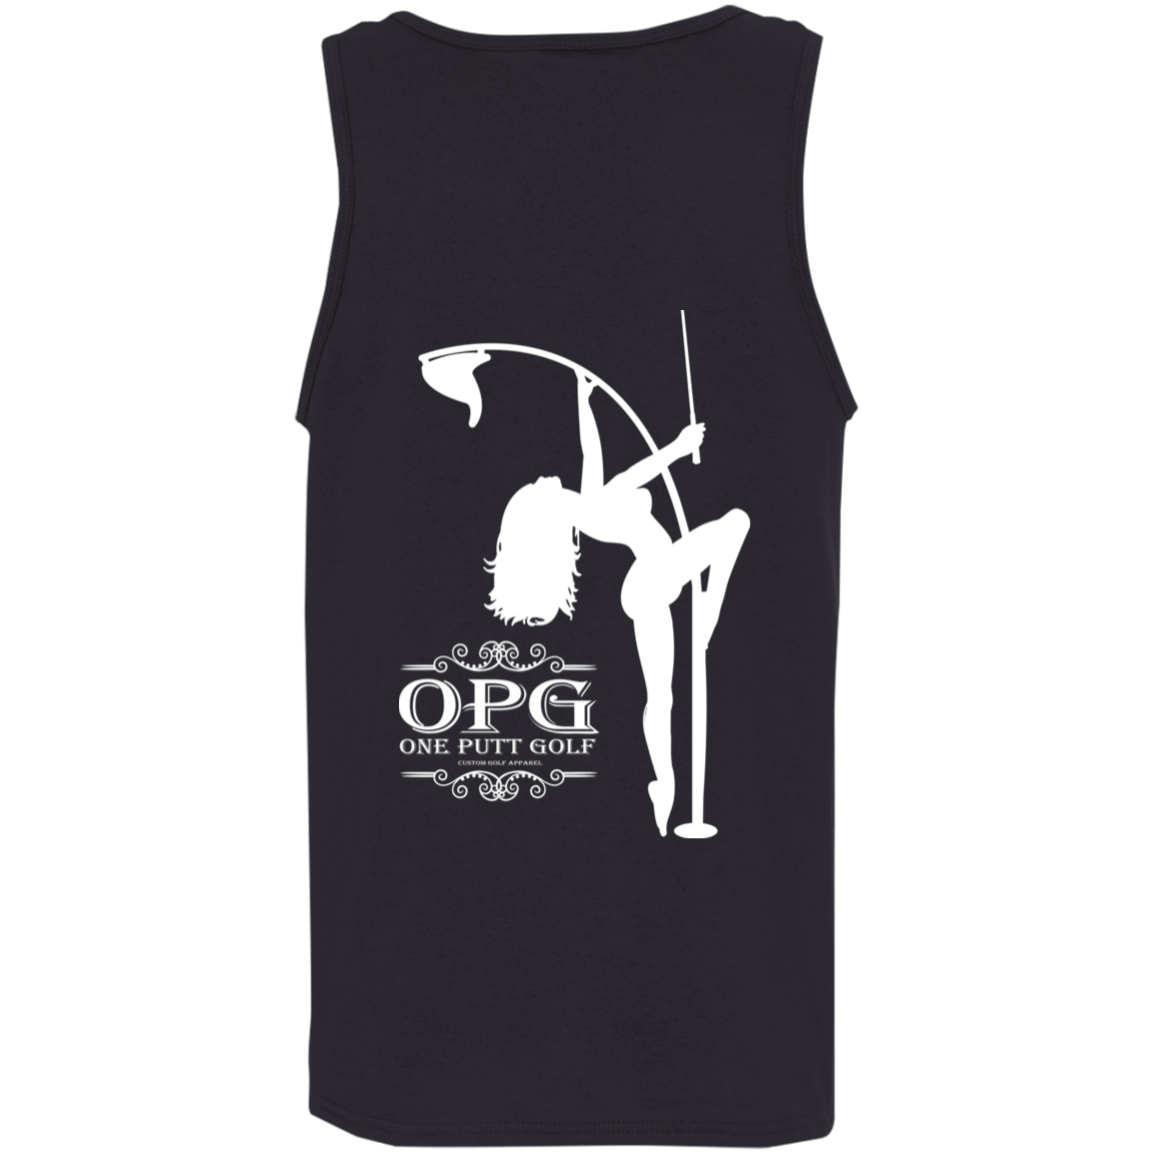 OPG Custom Design #10. Lady on Front / Flag Pole Dancer On Back. 100% Cotton Preshrunk Jersey Knit Tank Top